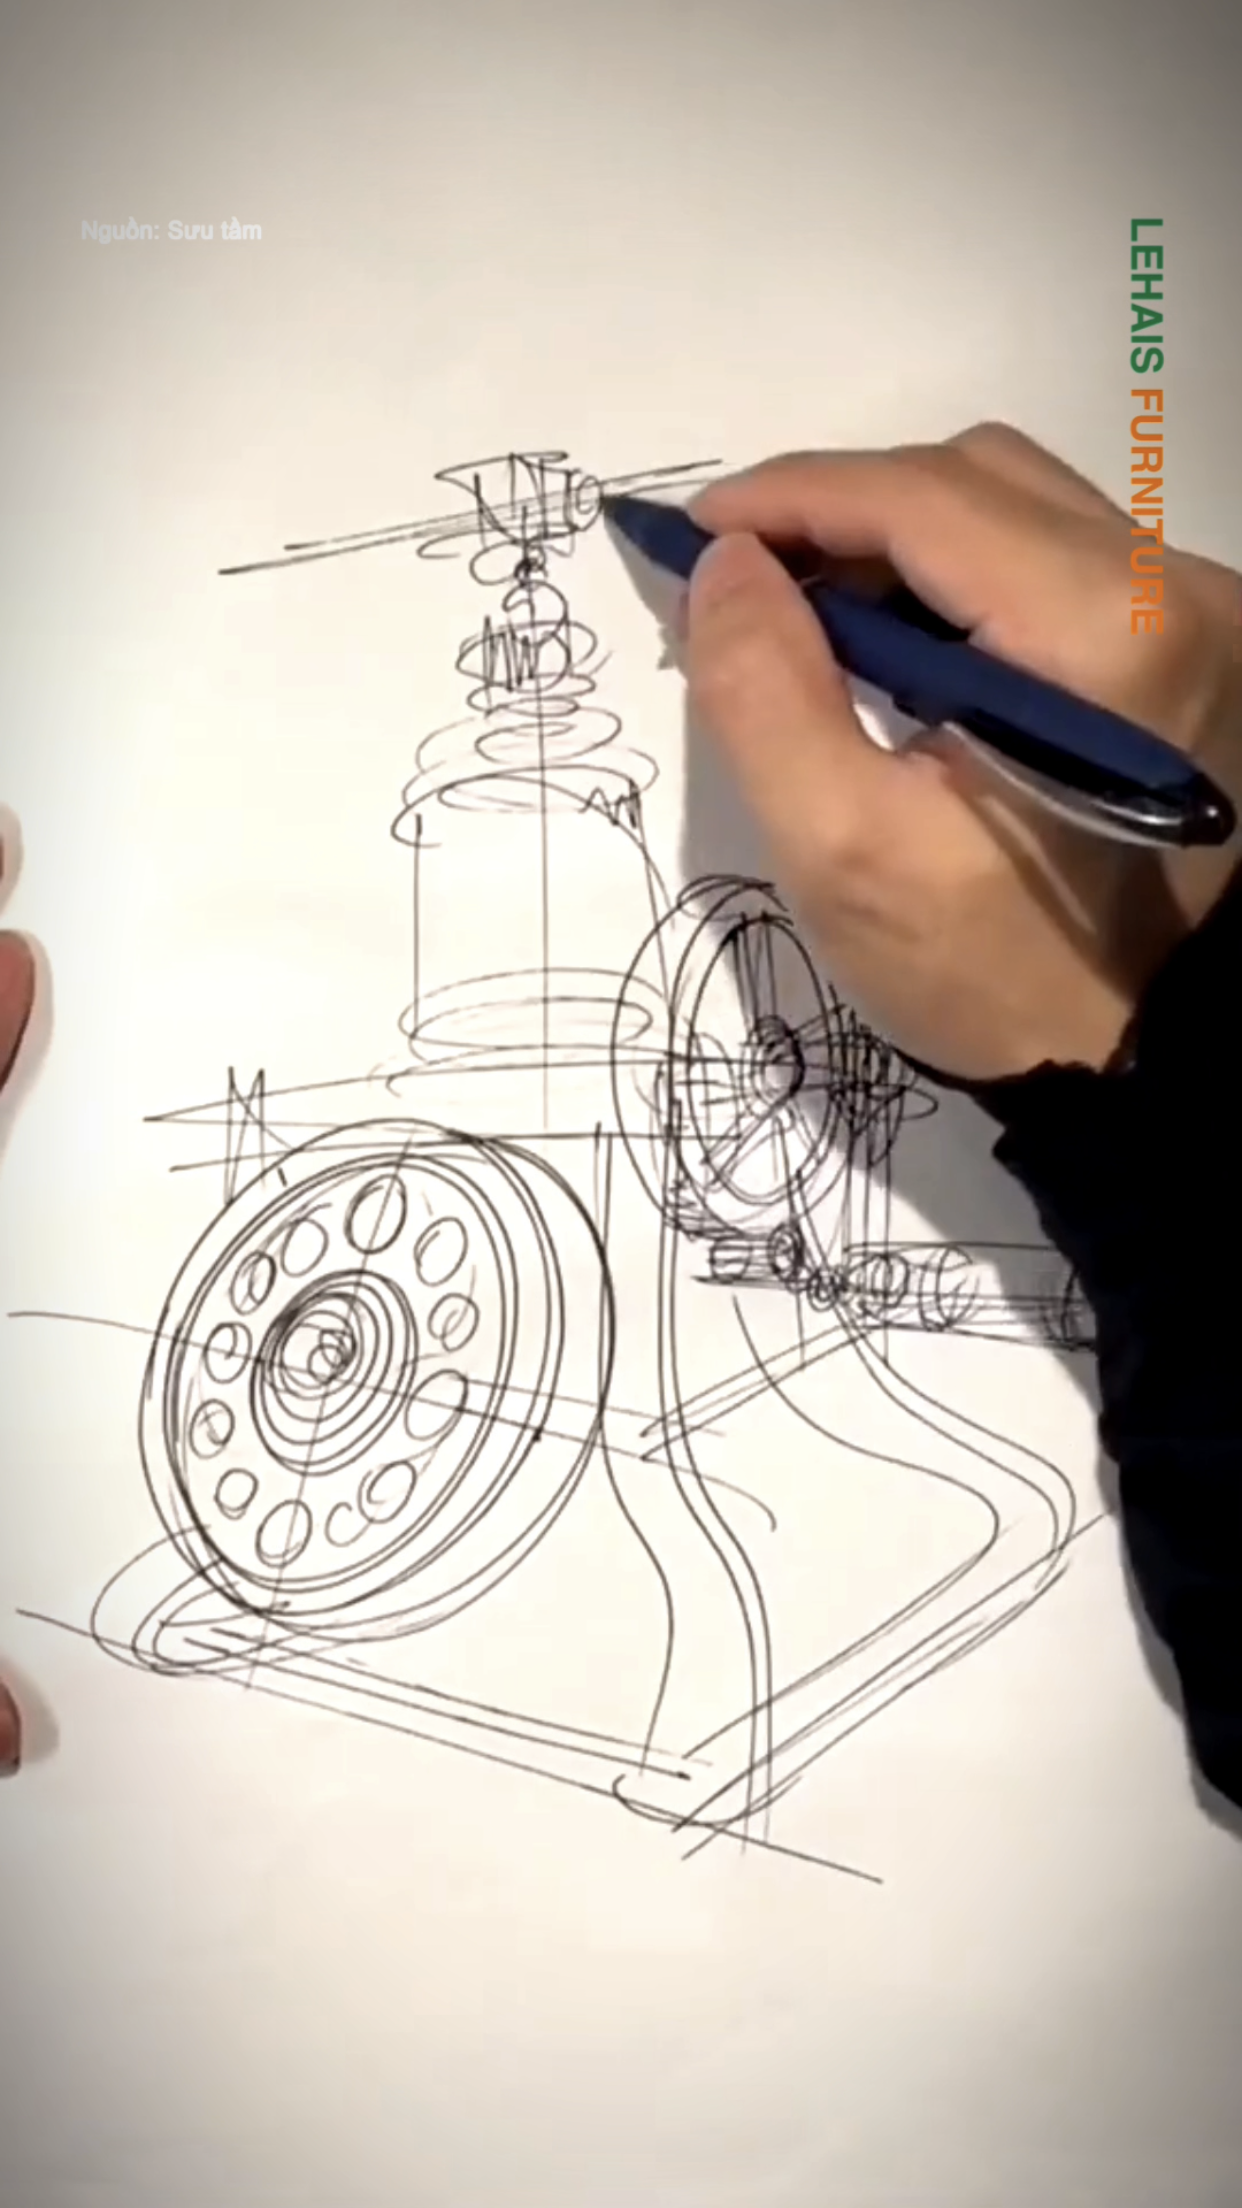 Vẽ thiết kế điện thoại cổ bằng bút chì cực nhanh